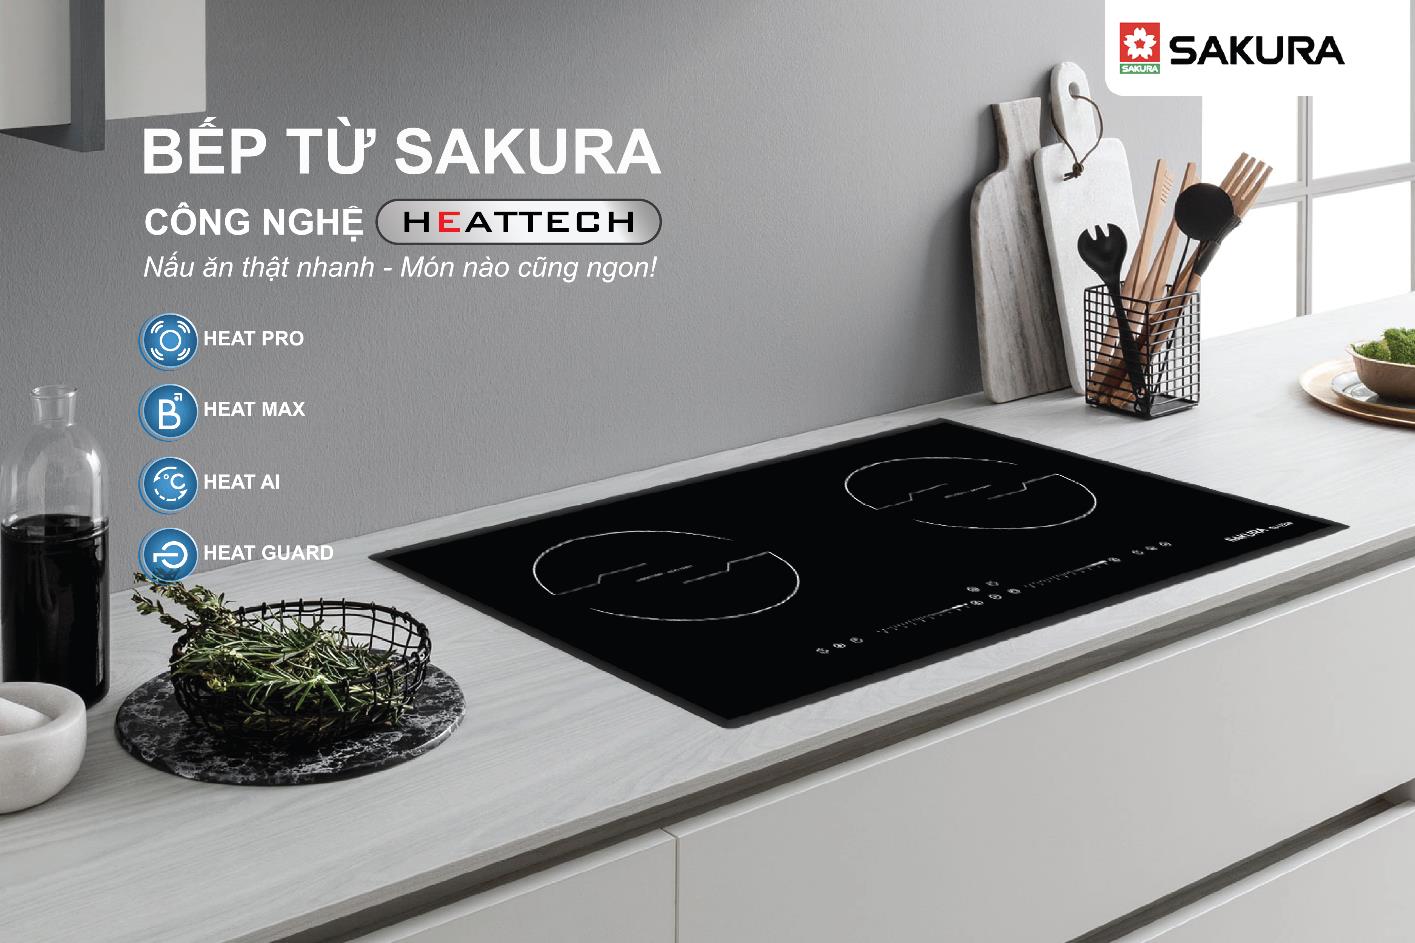 Ra mắt sản phẩm bếp từ Sakura với công nghệ HEATTECH đột phá - Ảnh 1.